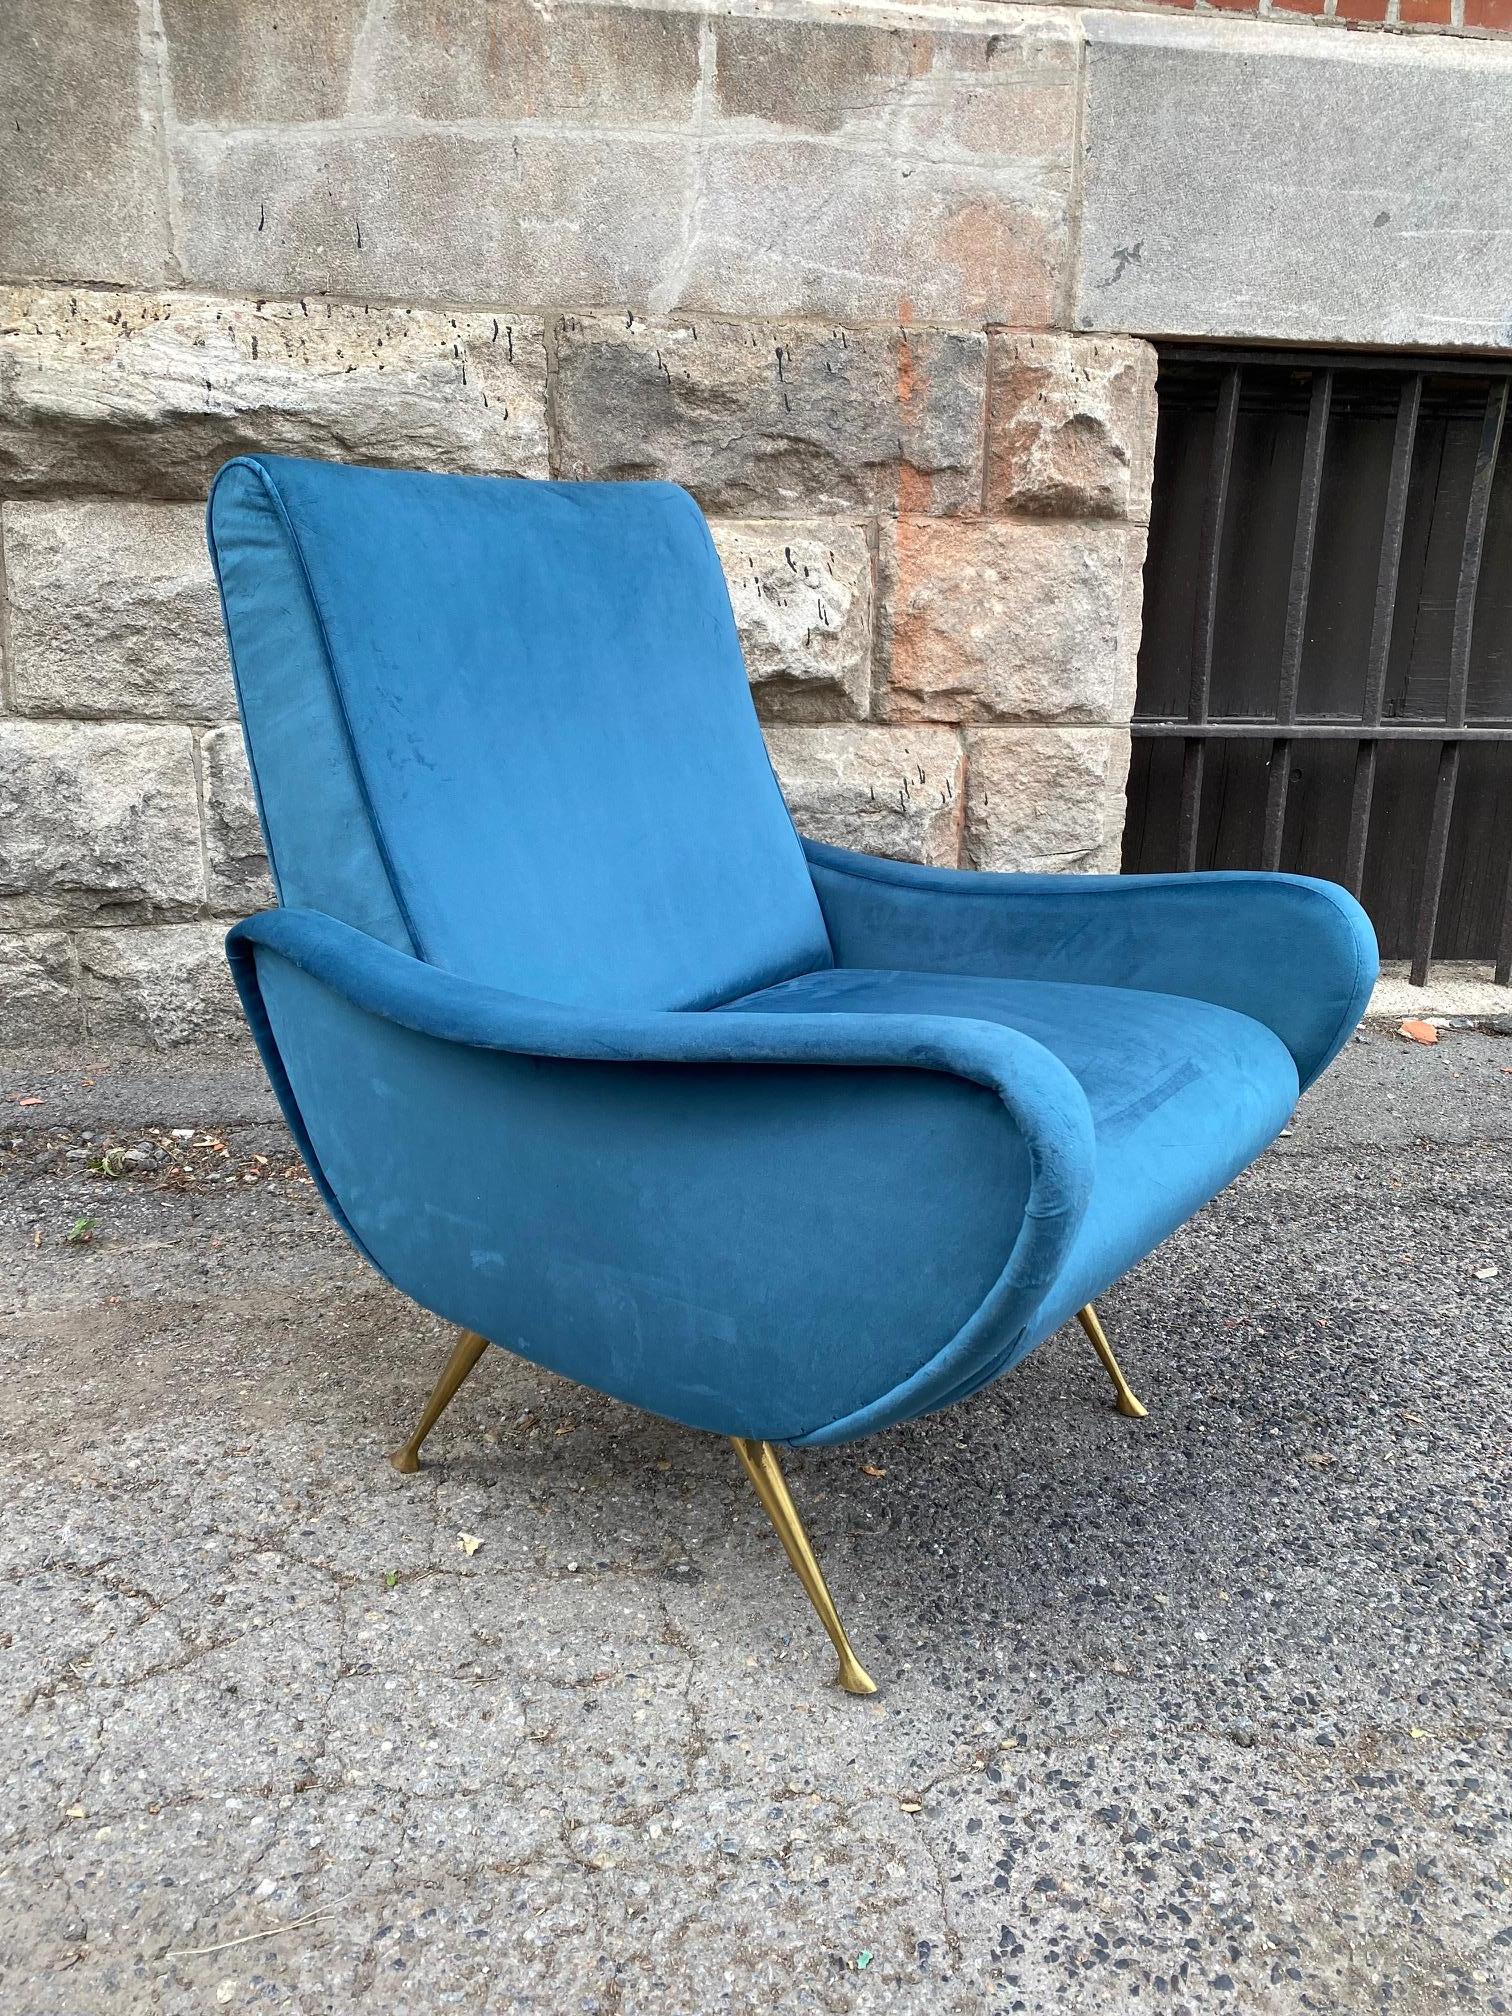 Chaise de dame en velours bleu doux dans le style de Marco Zanuso pour Artflex.
La chaise a reçu la médaille d'or à la IXe Triennale de Milan, en 1951.